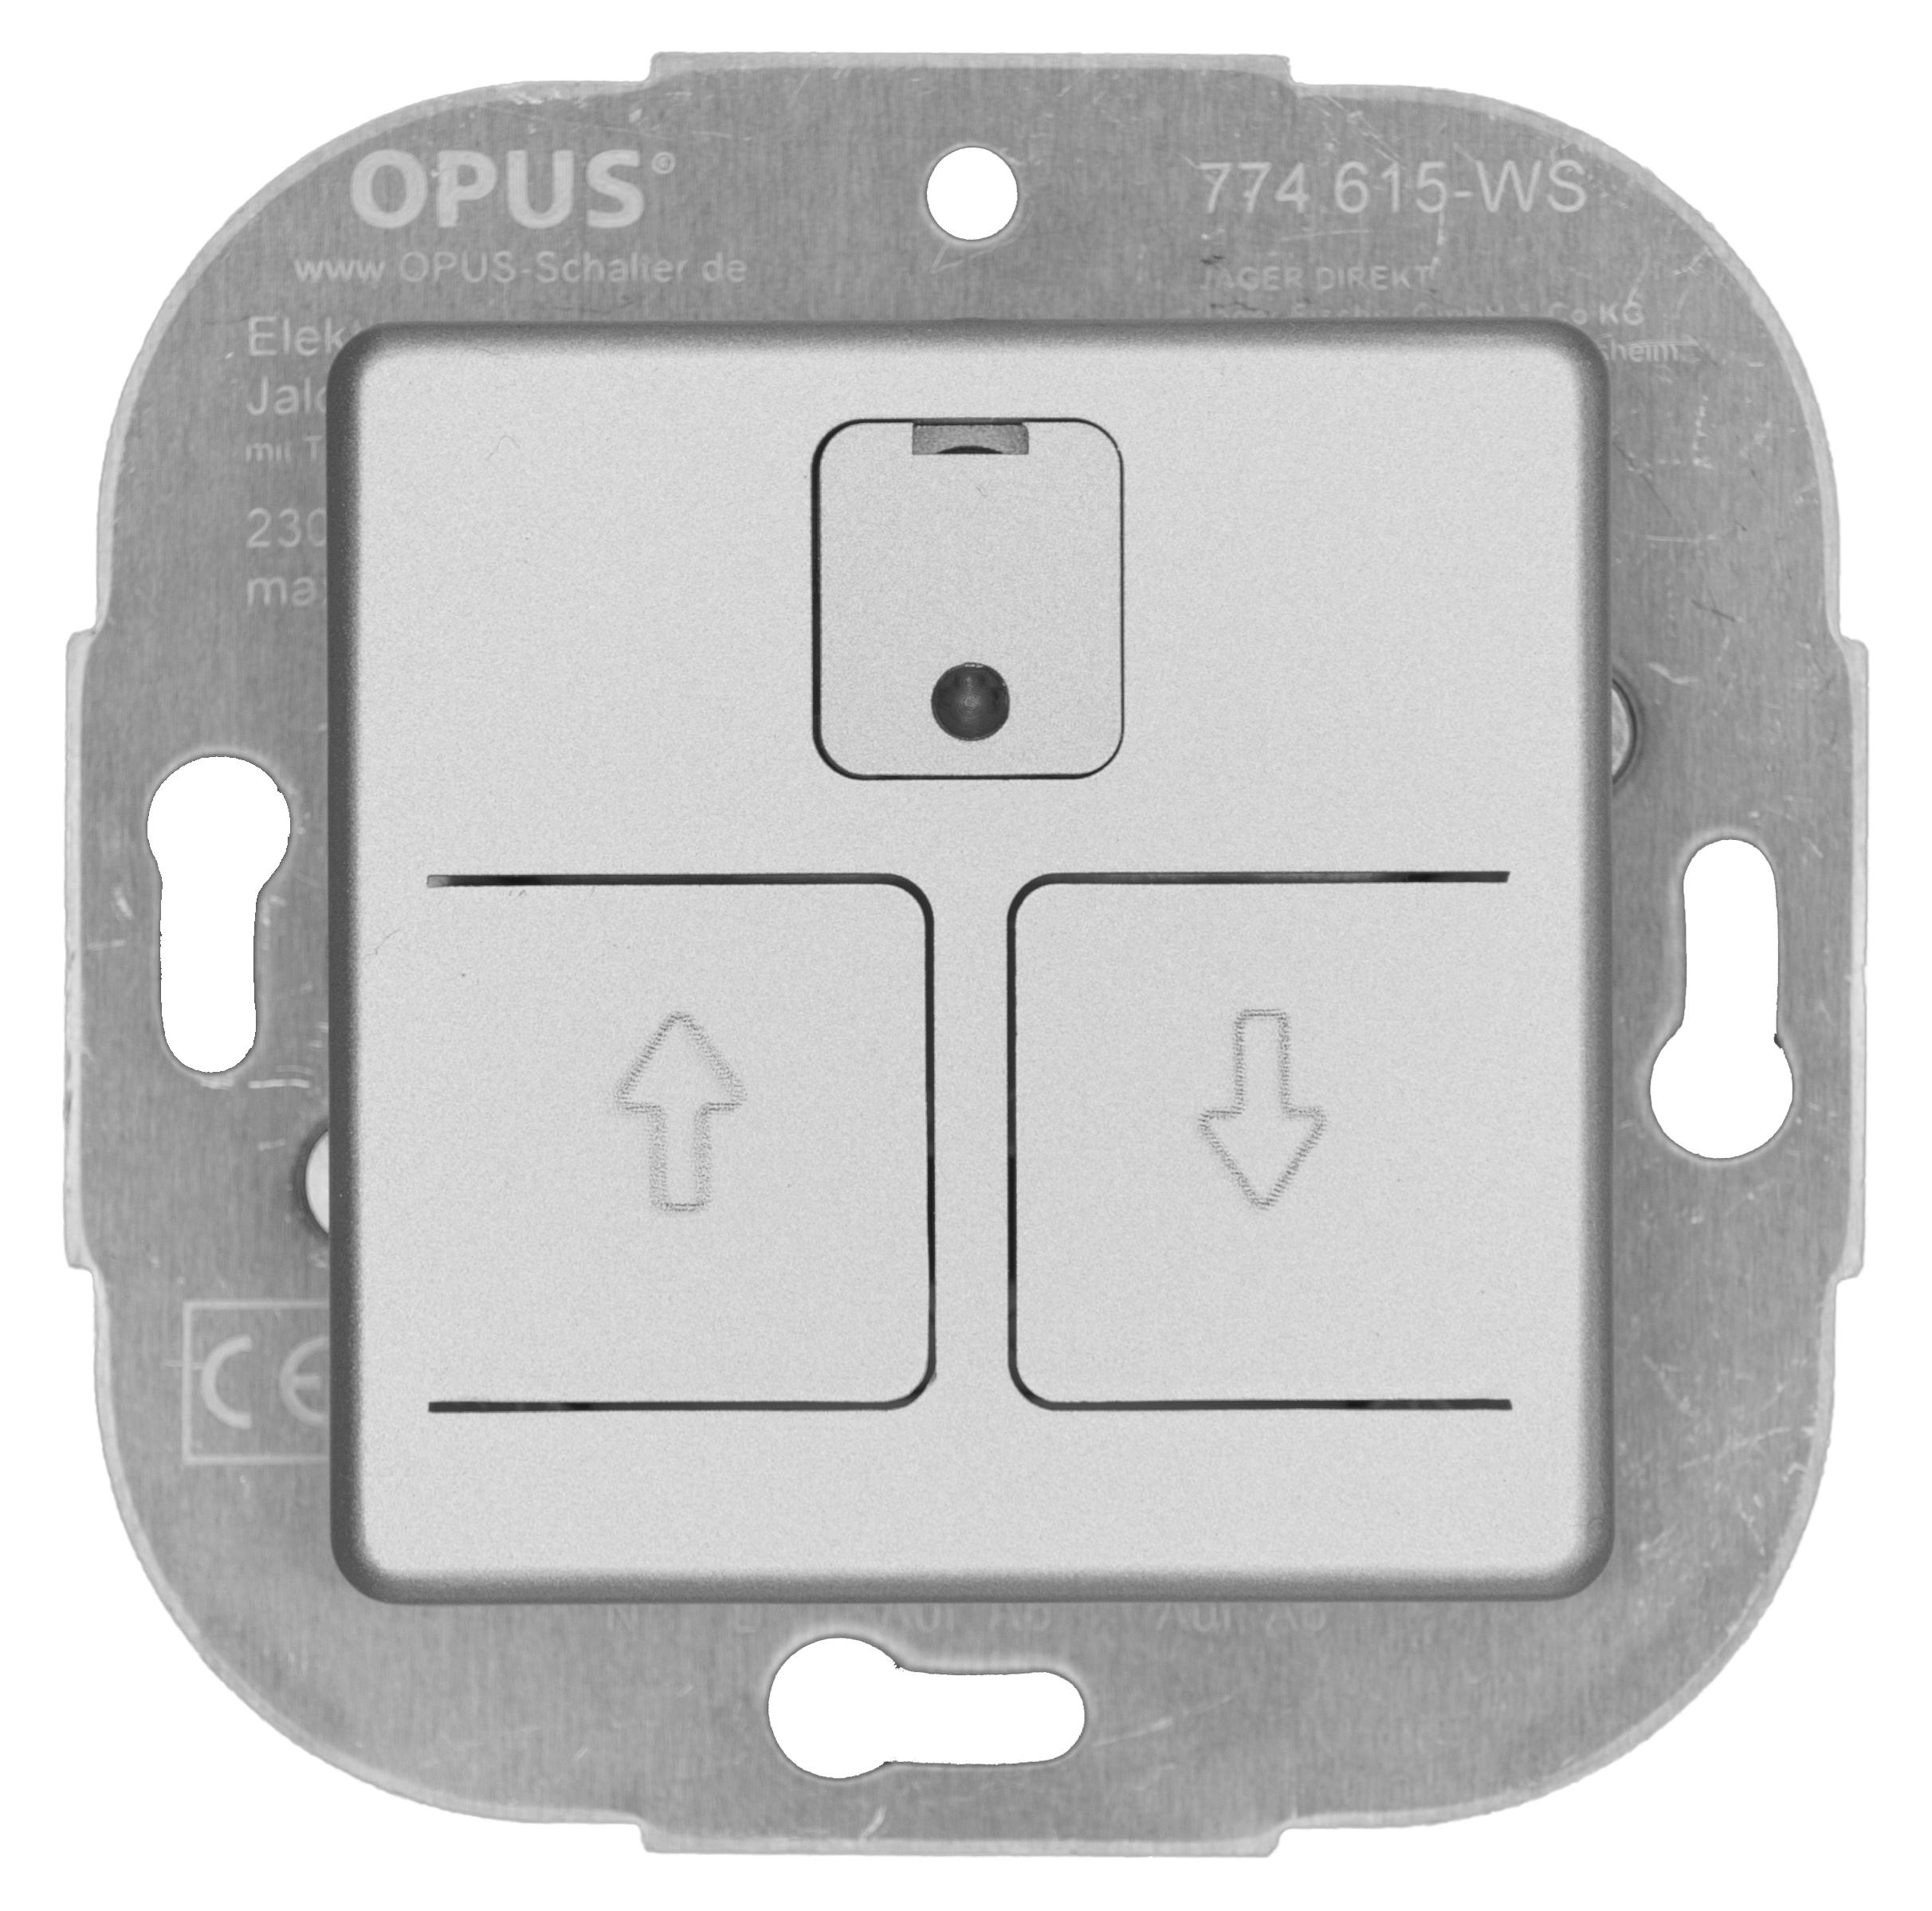 OPUS 55 elektronische rolluik- /jaloezieschakelaar met weekautomaat alu - zilver - zijdeglans